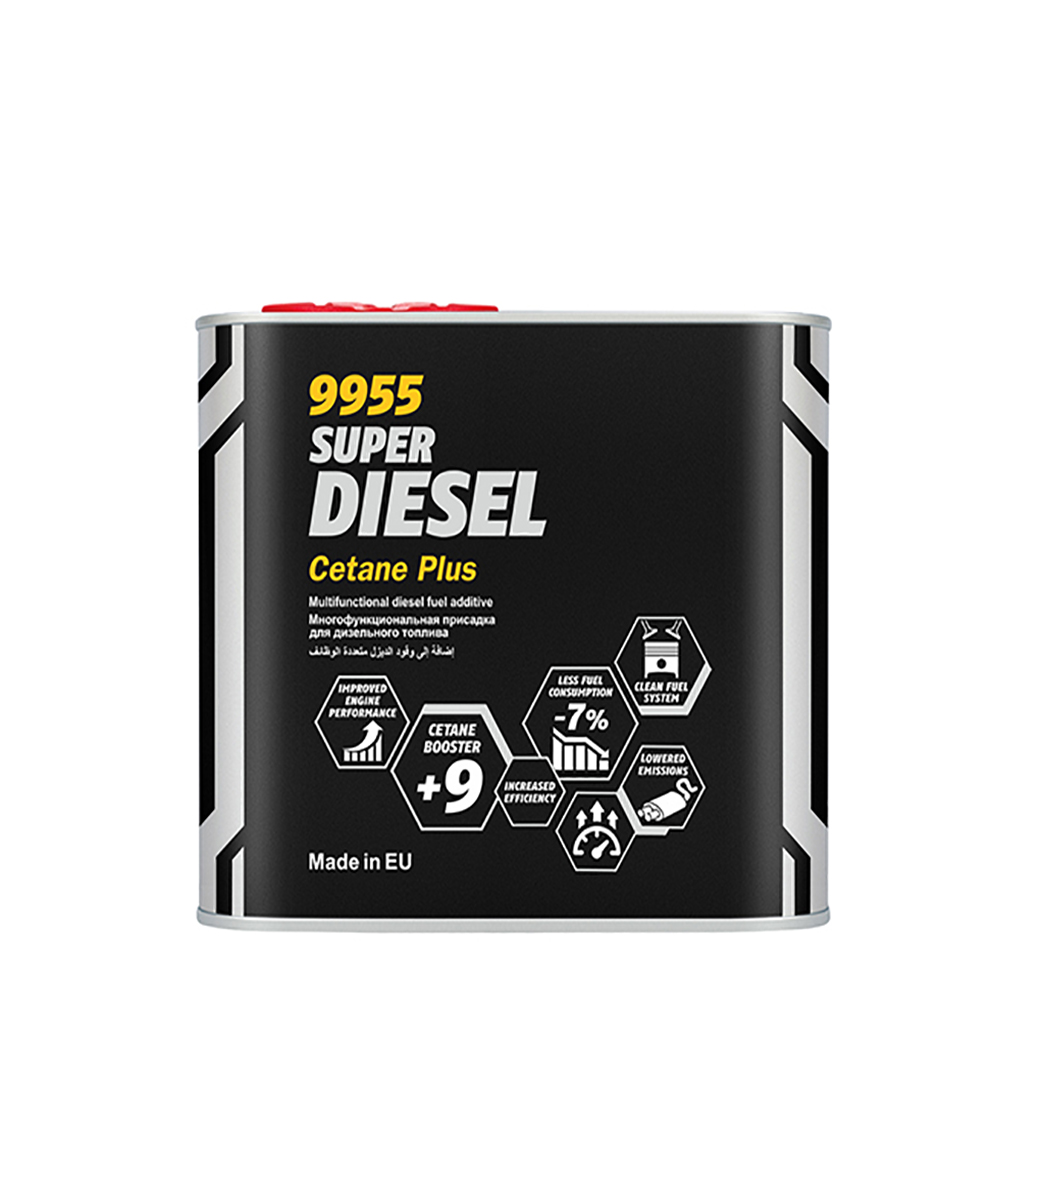 Super Diesel Cetane Plus